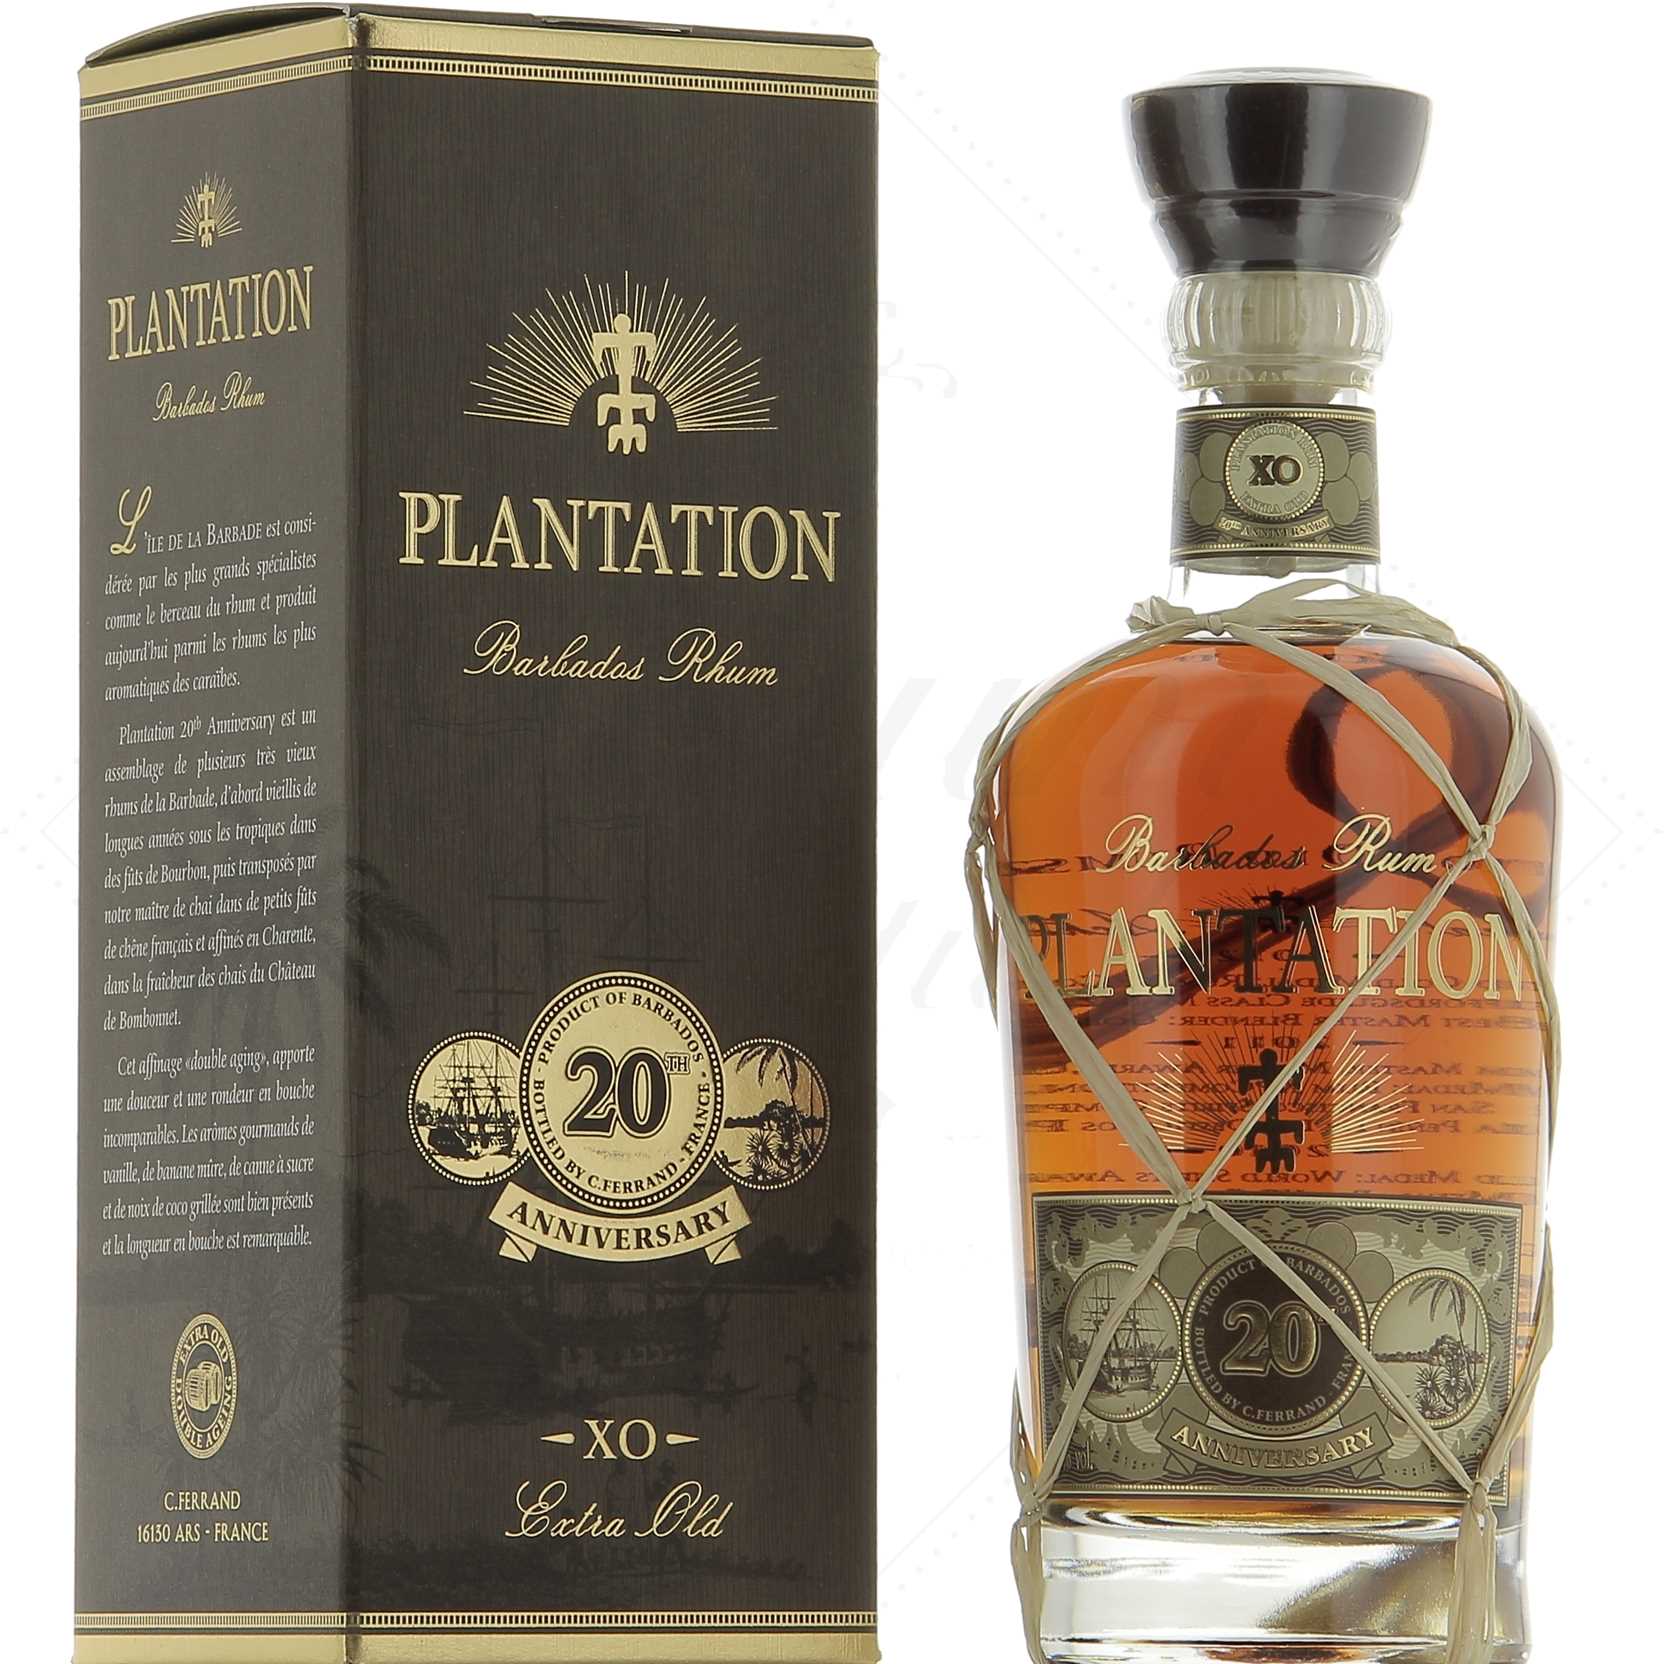 Plantation Rum Barbados Xo th Anniversary 40 Rhum Attitude